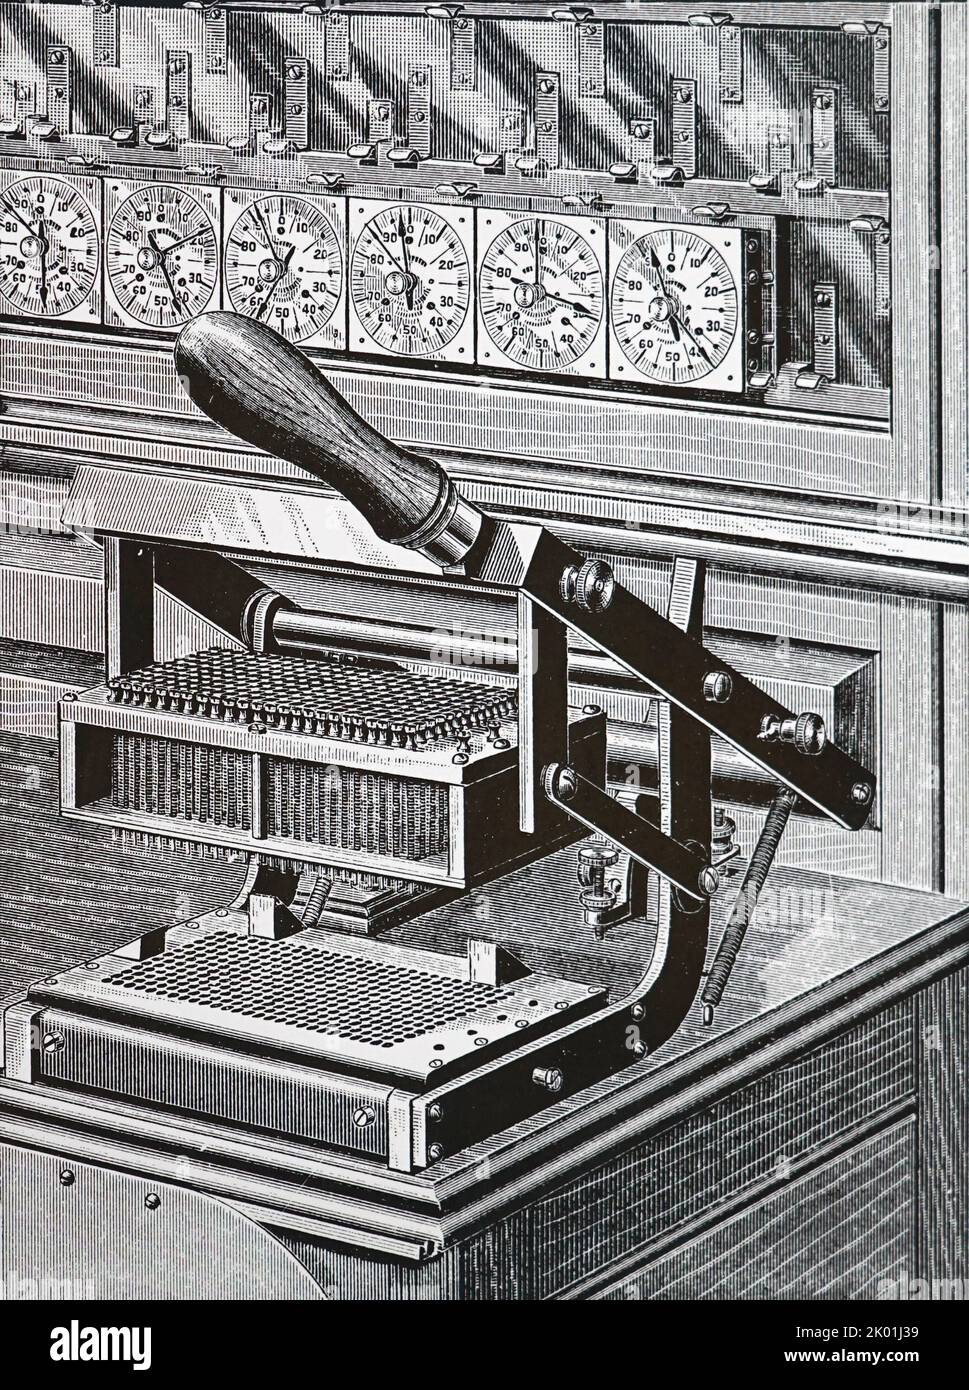 Tabulation Hollerith. Gros plan de la presse de fermeture du circuit. Cette machine a été utilisée pour la première fois dans le recensement américain de 1890. De Park Benjamin Modern Mechanism, Londres et New York, 1892. Banque D'Images